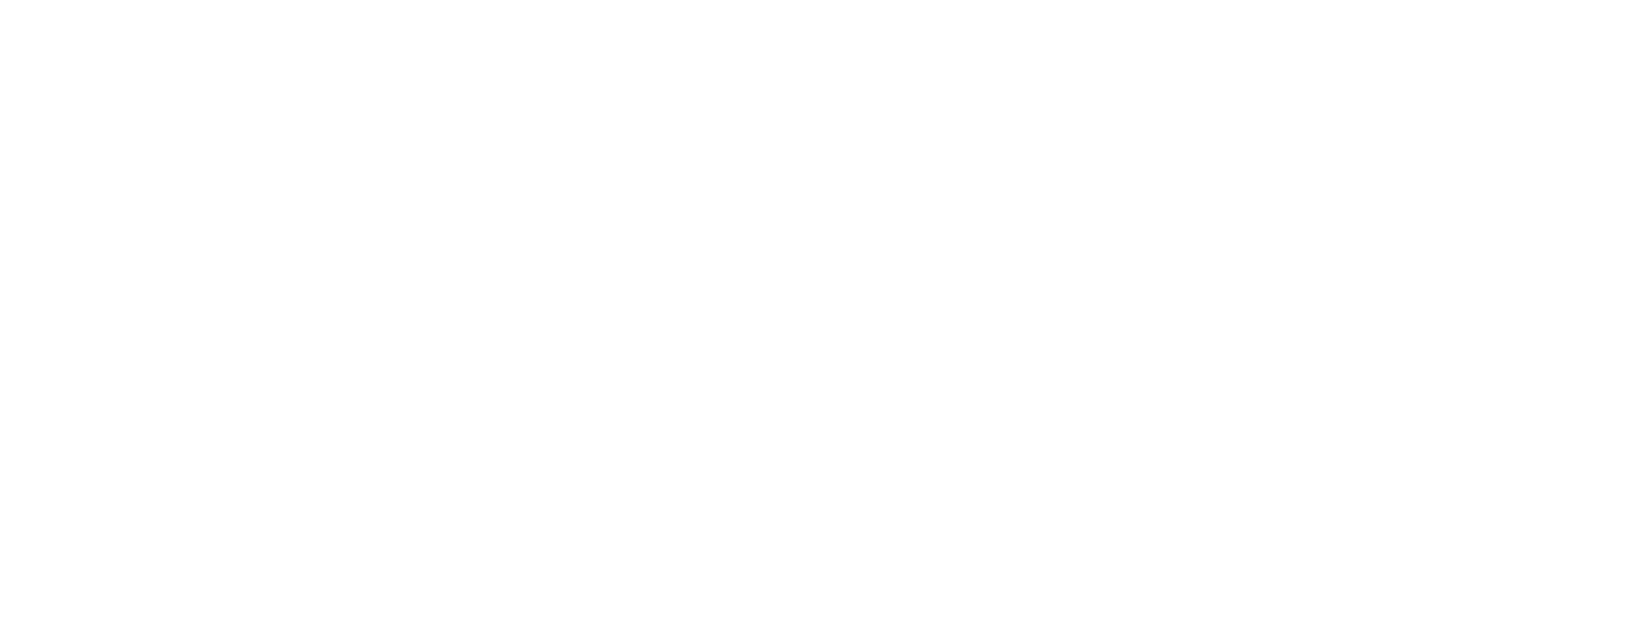 West Slope logo